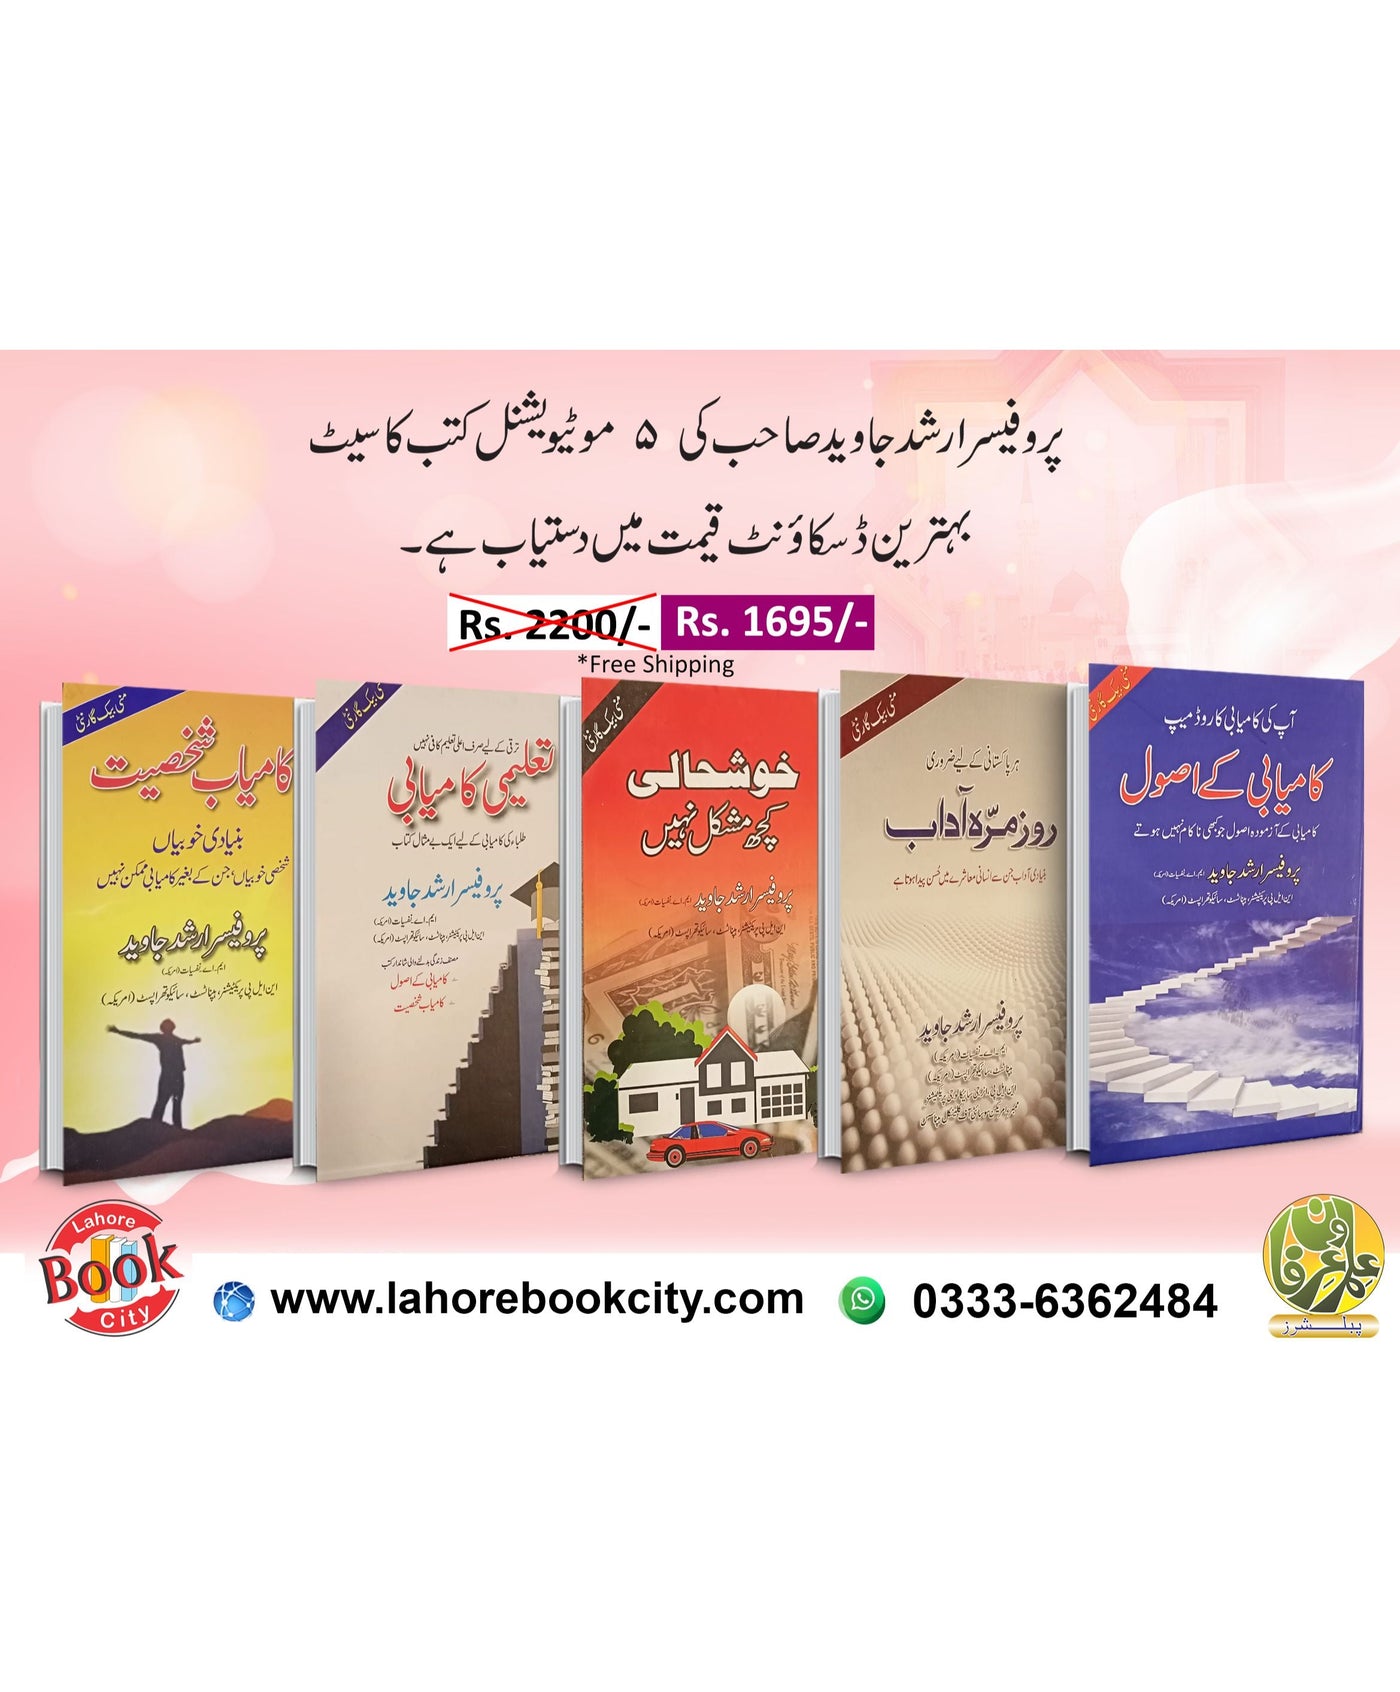 prof arshad javed 5 books deal set